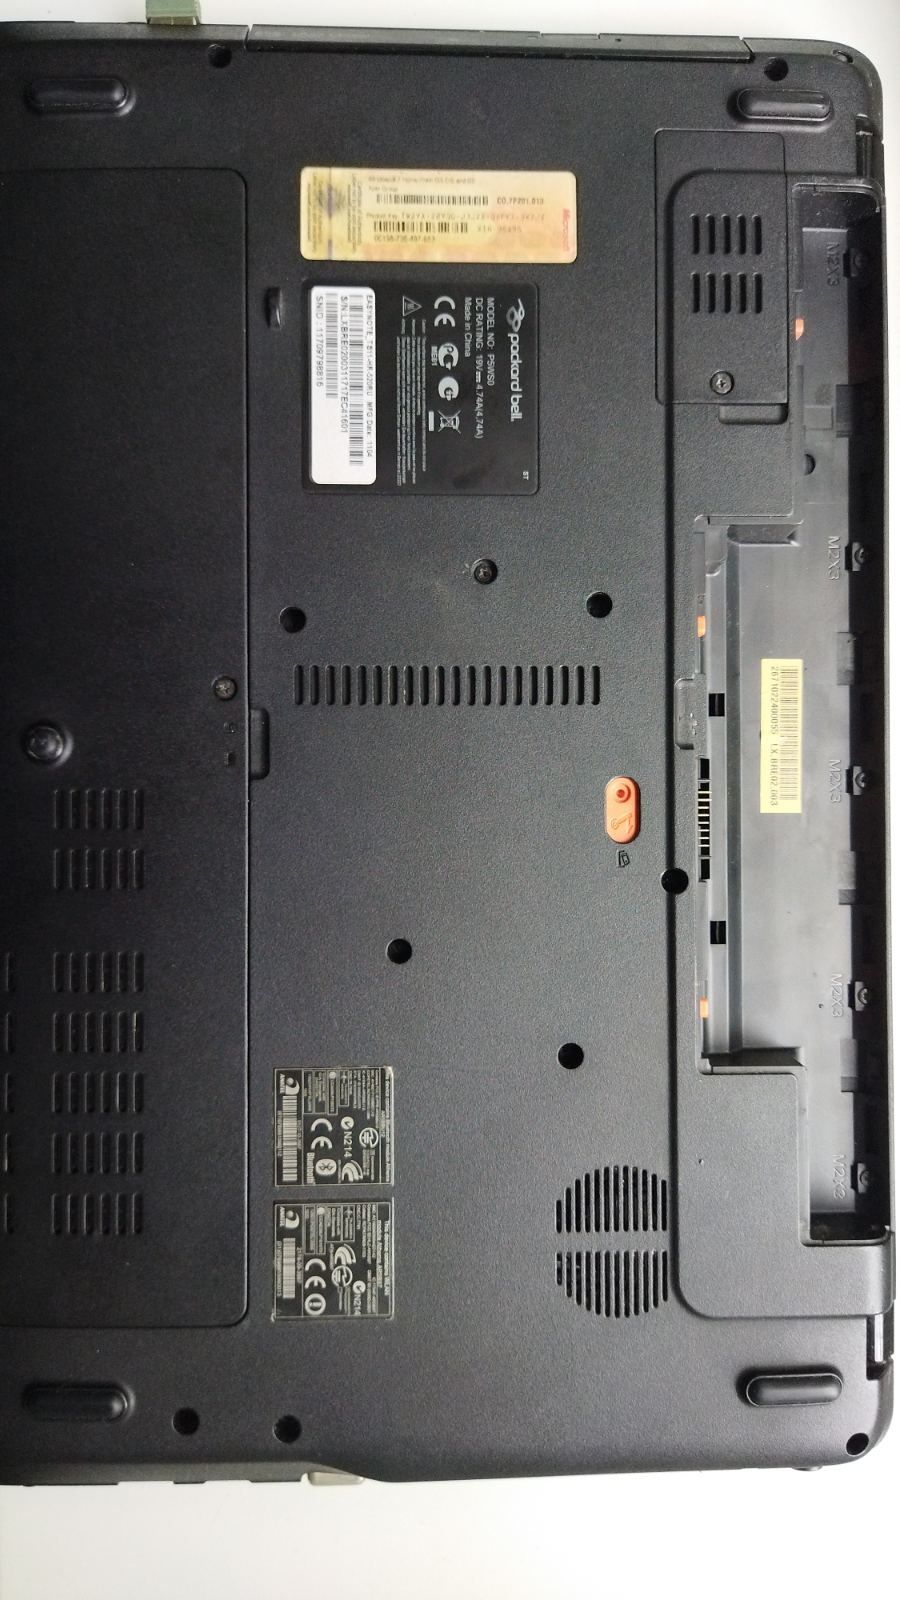 Ноутбук Packard bell 15 дюймов

Core i5 2410m
Ddr 6gb
GForce 540m
Hdd